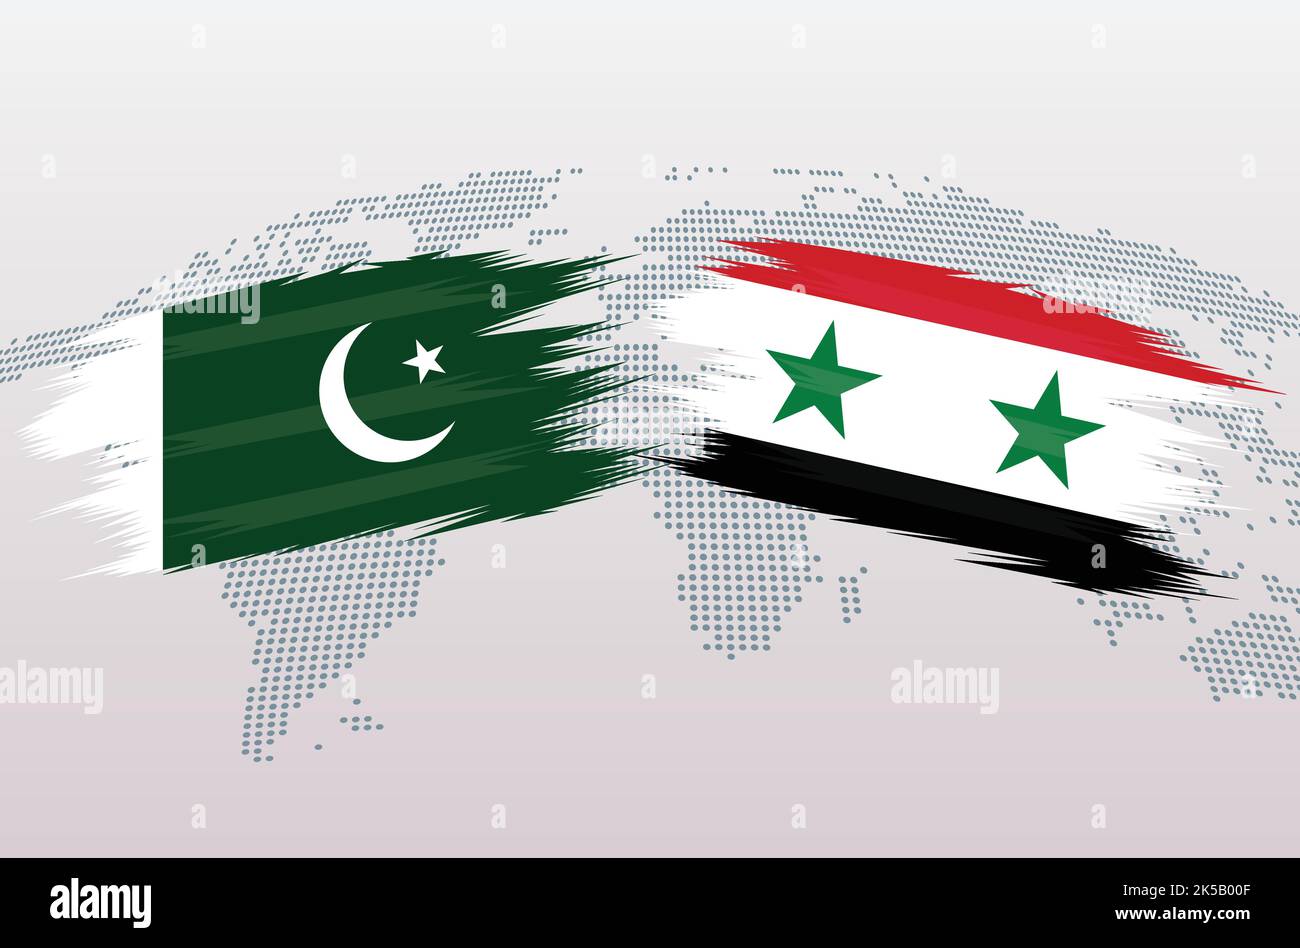 Le Pakistan contre la Syrie. La République islamique du Pakistan contre les drapeaux syriens, isolés sur fond de carte grise du monde. Illustration vectorielle. Illustration de Vecteur